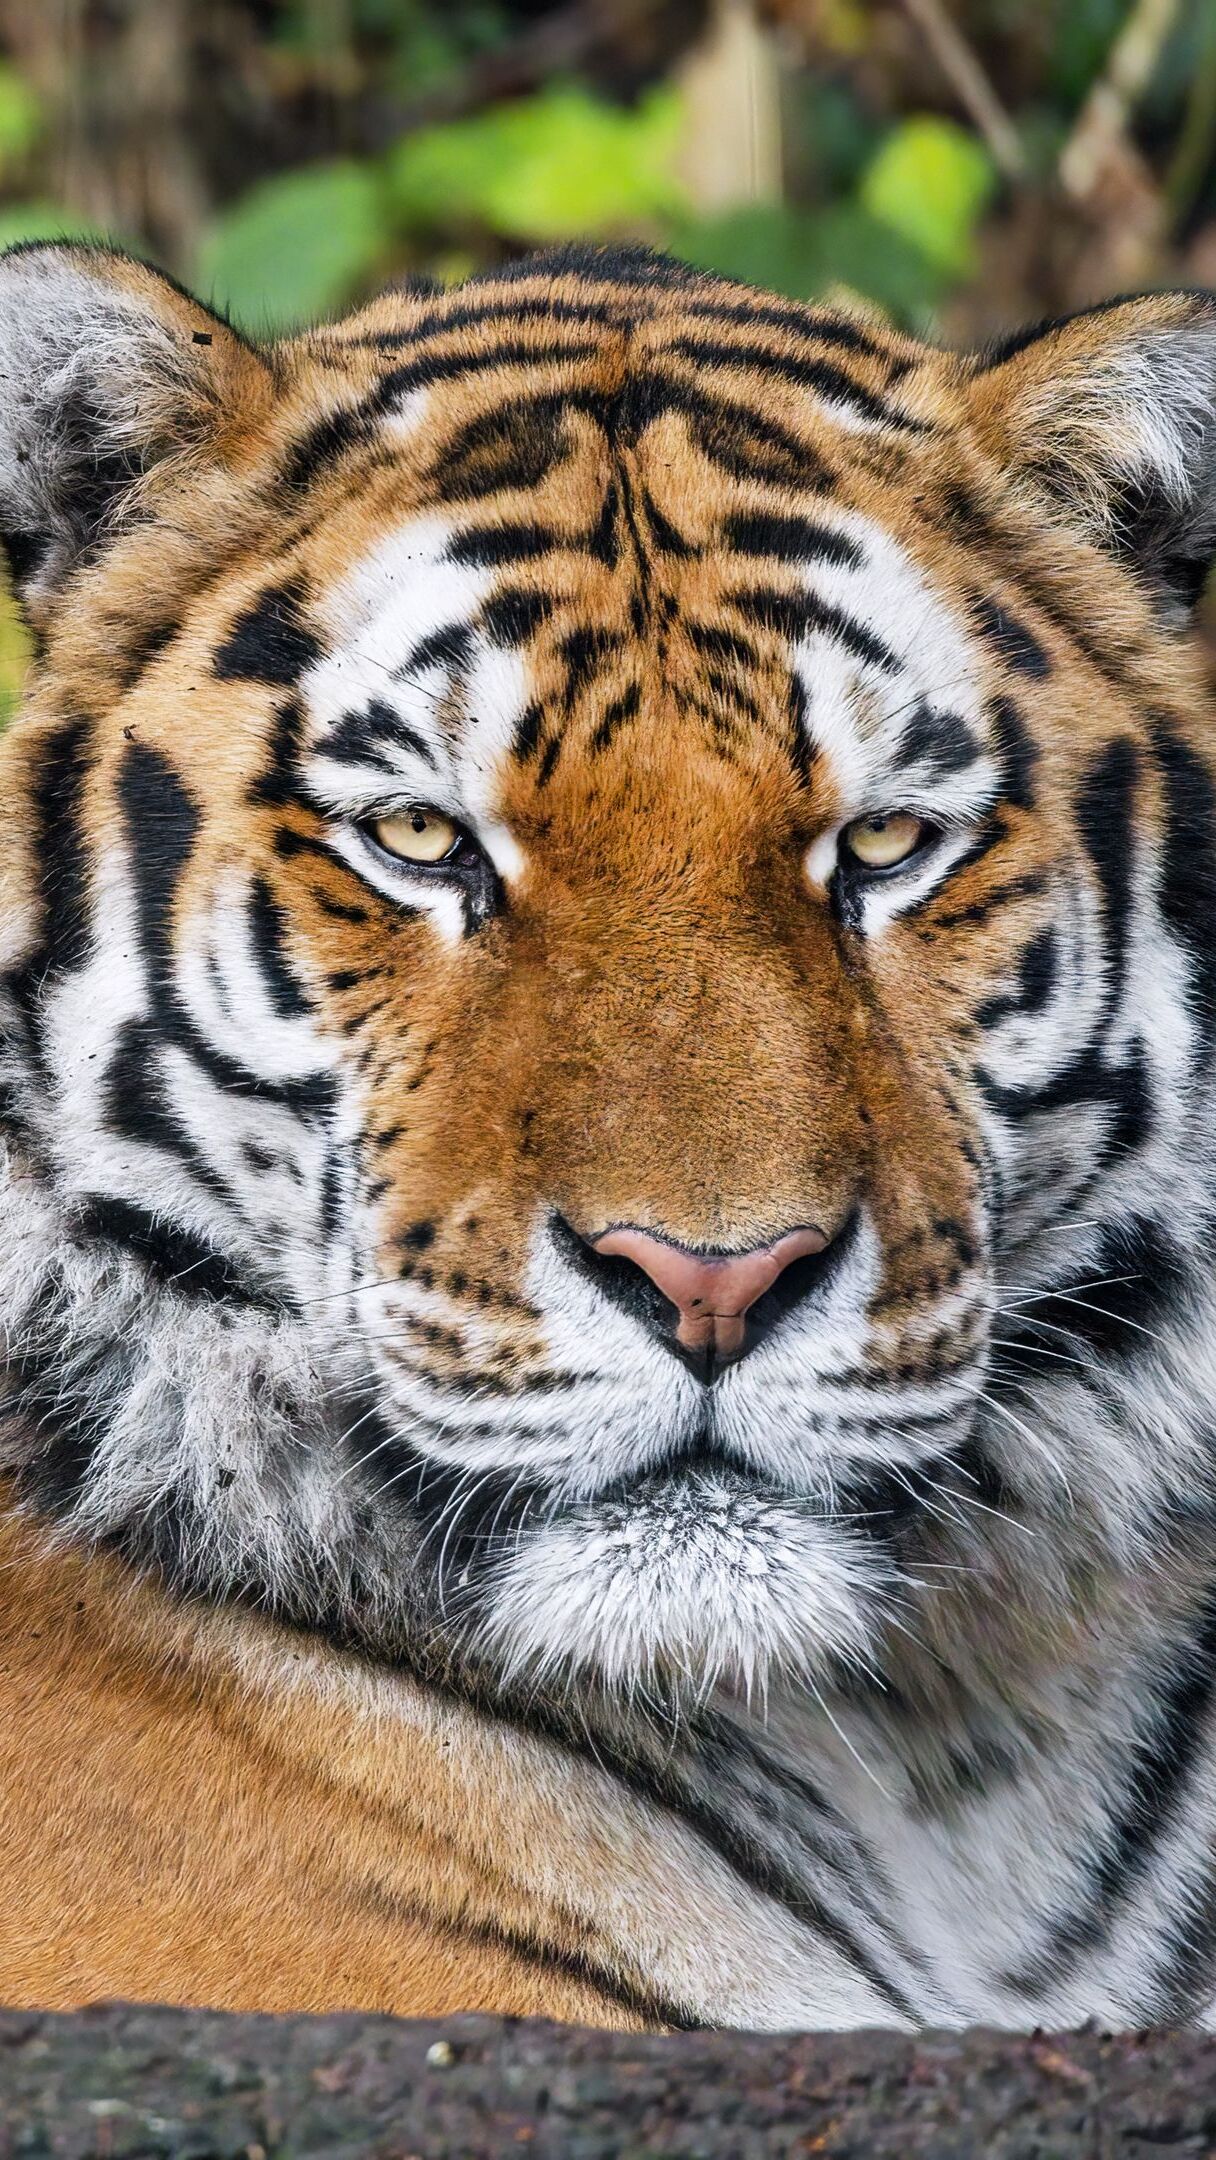 Głowa tygrysa w zbliżeniu